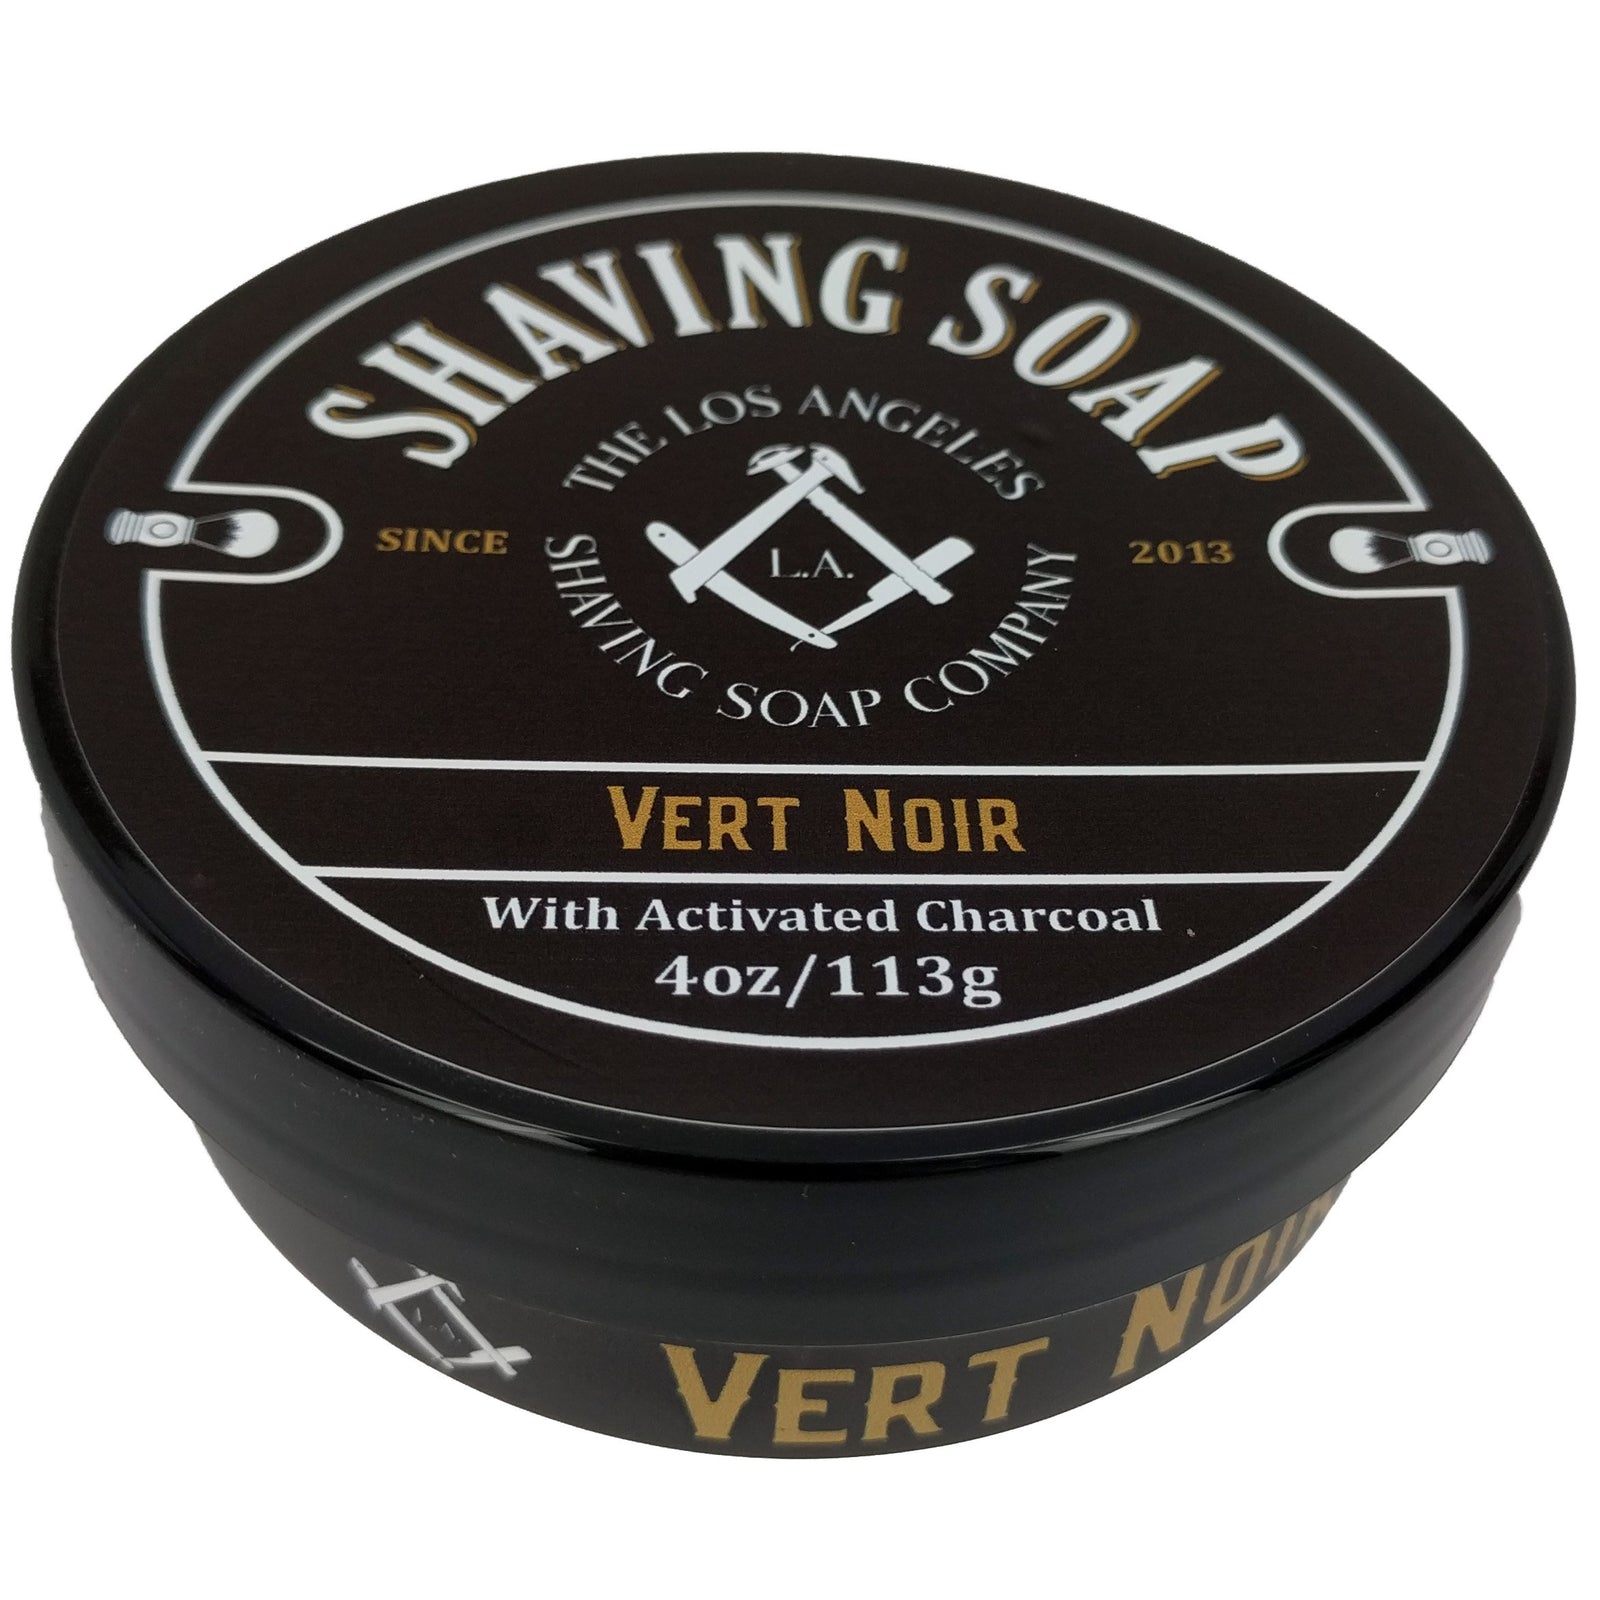 LA Shaving Soap Co - Vert Noir Shaving Soap